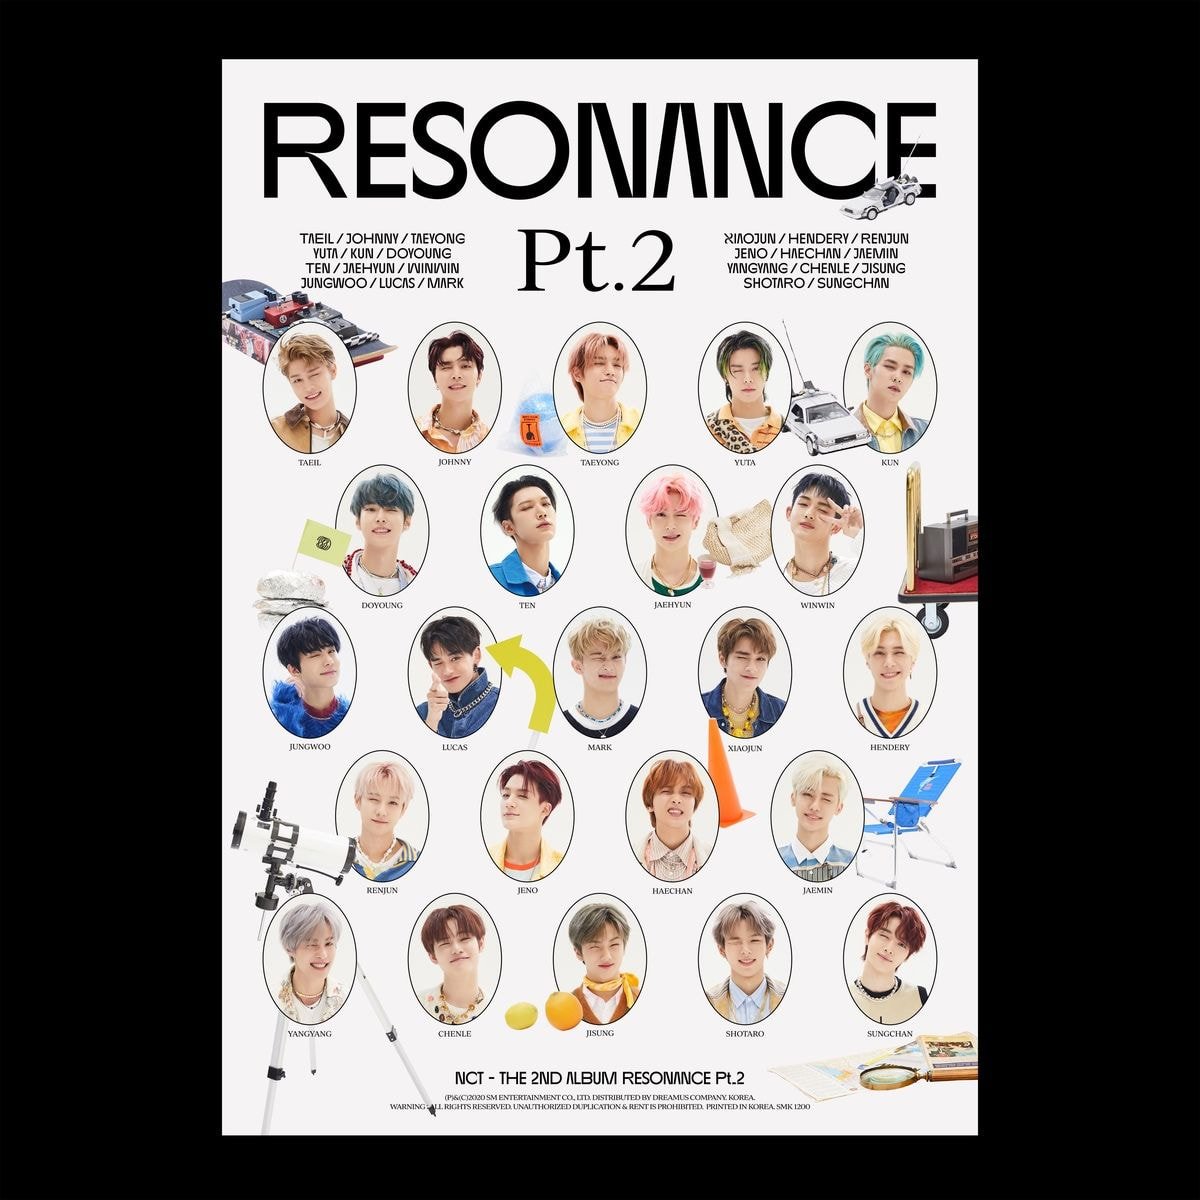 NCT - The 2nd Album RESONANCE Pt.2  #NCT #RESONANCE #RESONANCE_Pt2 #NCT_RESONANCE #NCT127 #NCTDREAM #WayV